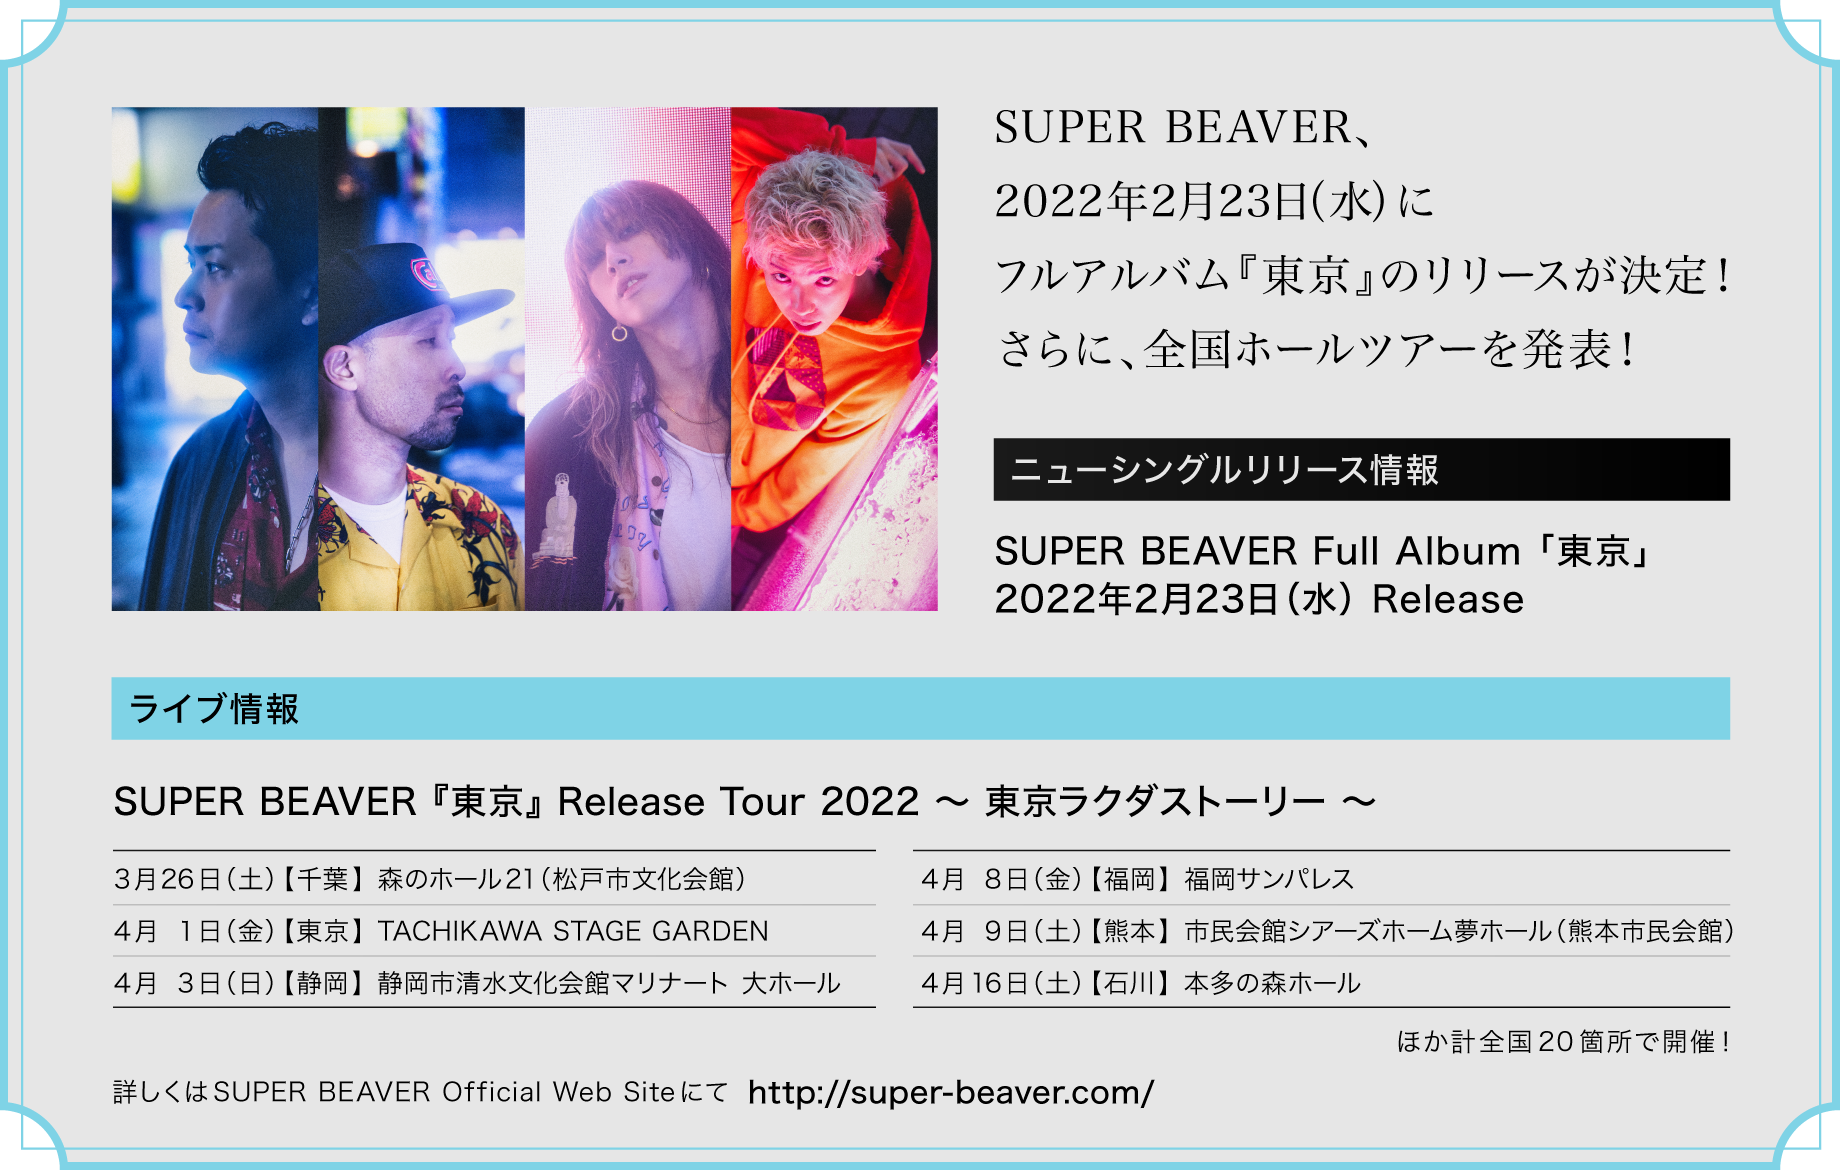 SUPER BEAVER、2022年2月23日(水)にフルアルバム『東京』のリリースが決定！さらに、全国ホールツアーを発表！